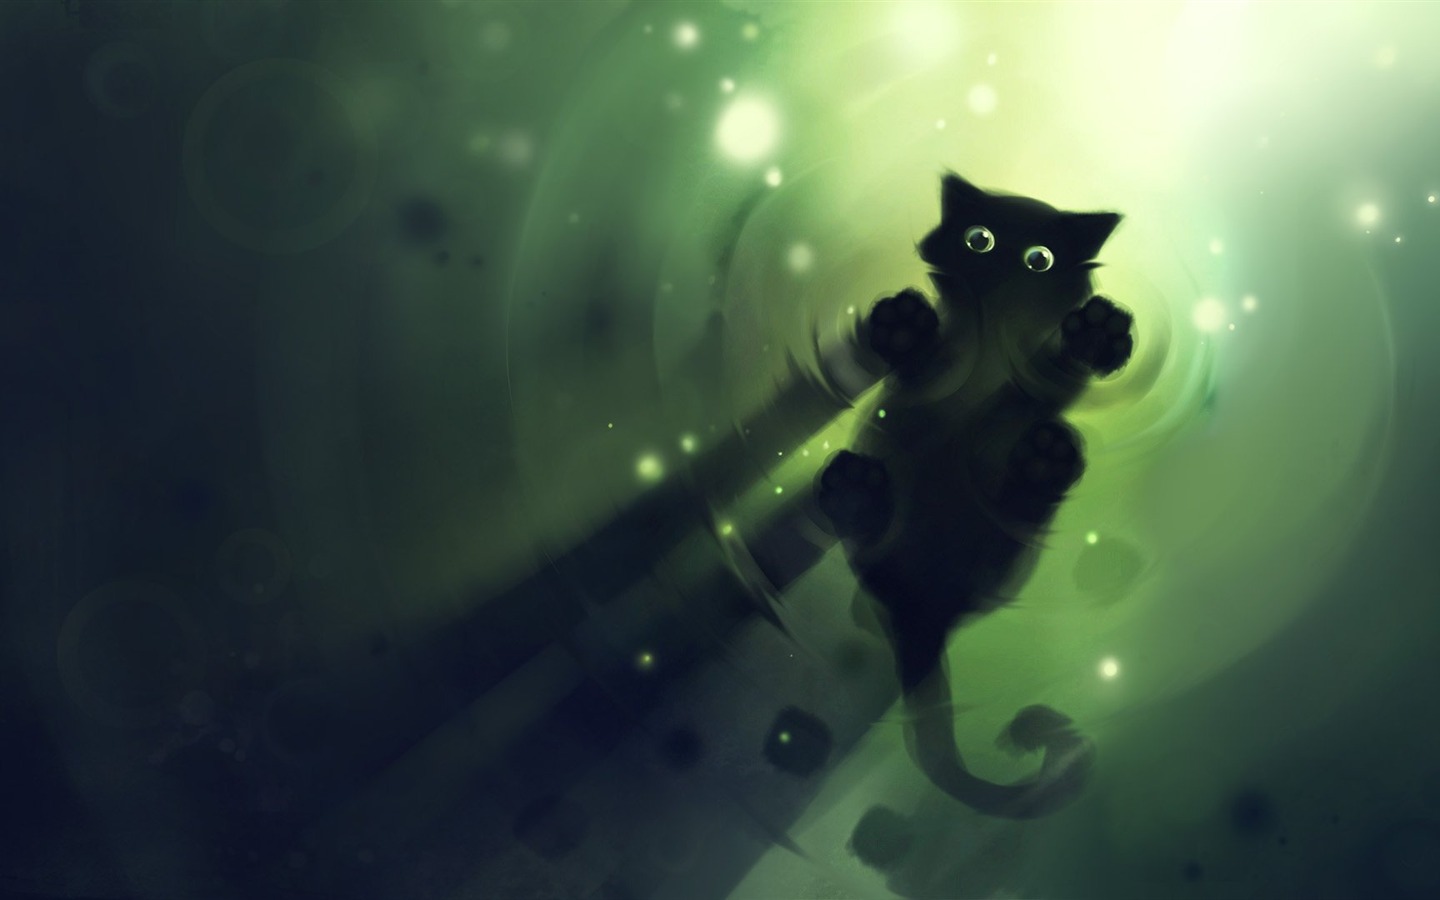 Apofiss pequeño gato negro papel pintado acuarelas #9 - 1440x900